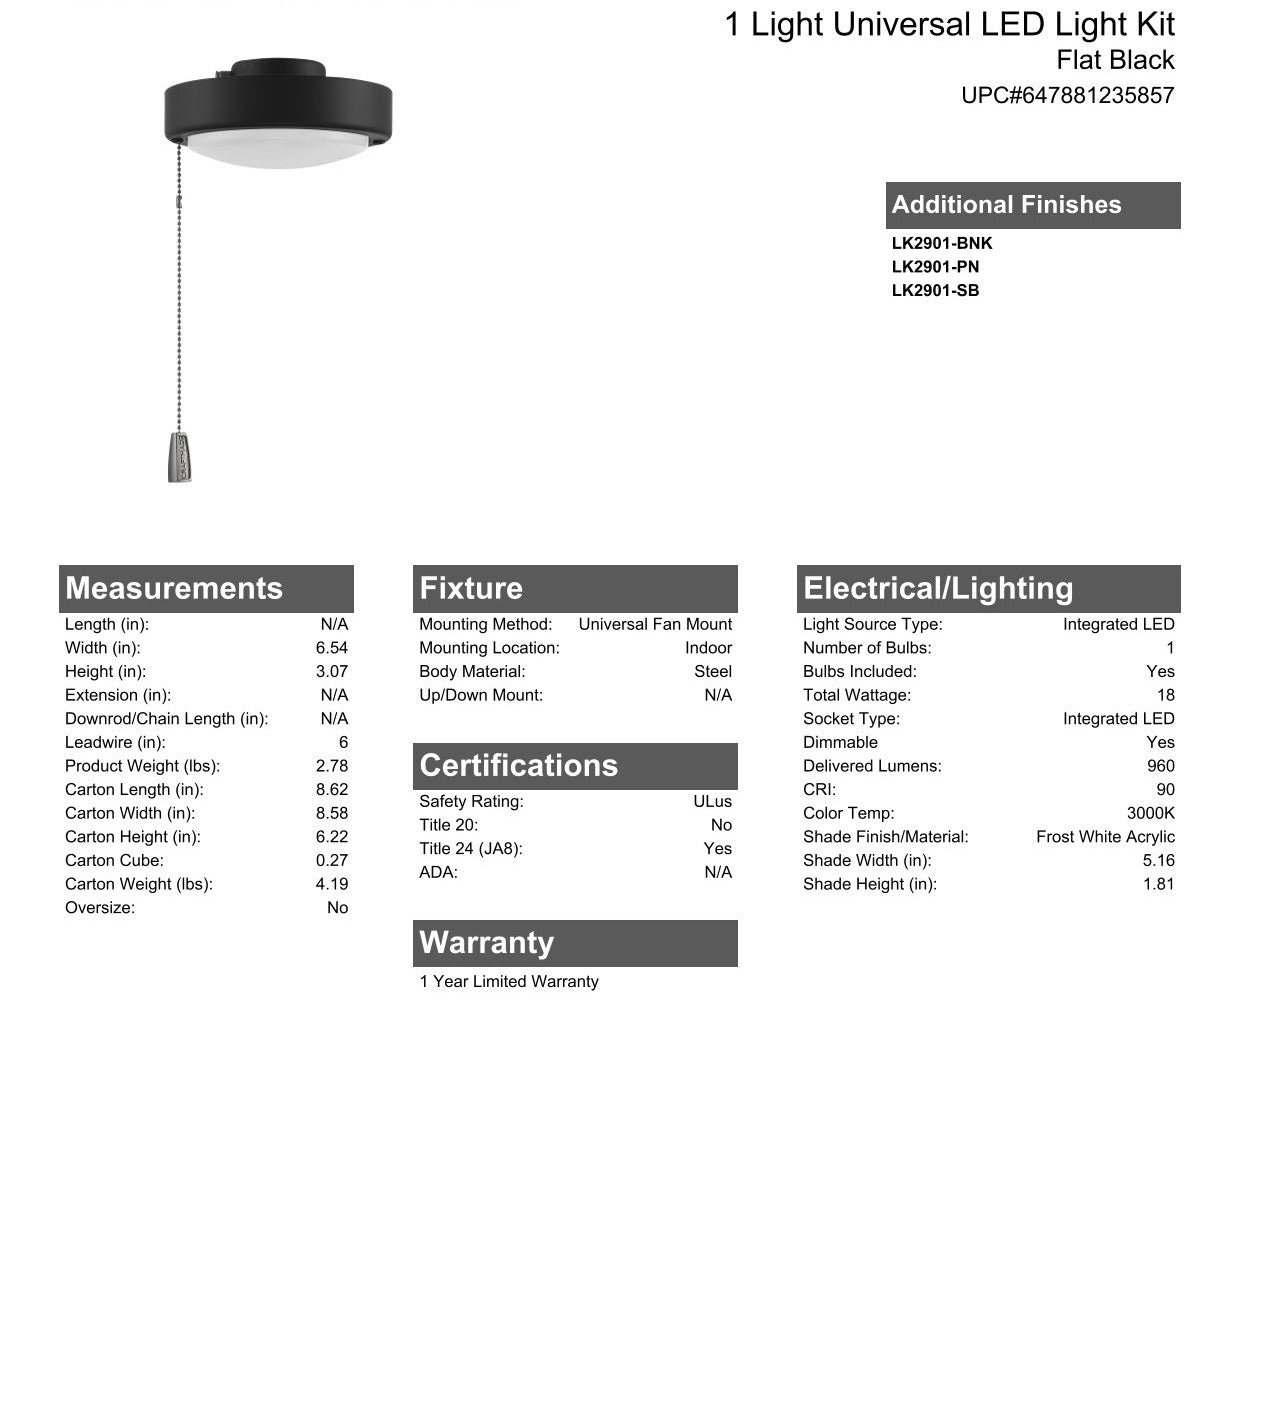 1 Light Universal LED Disk Light Kit in Flat Black